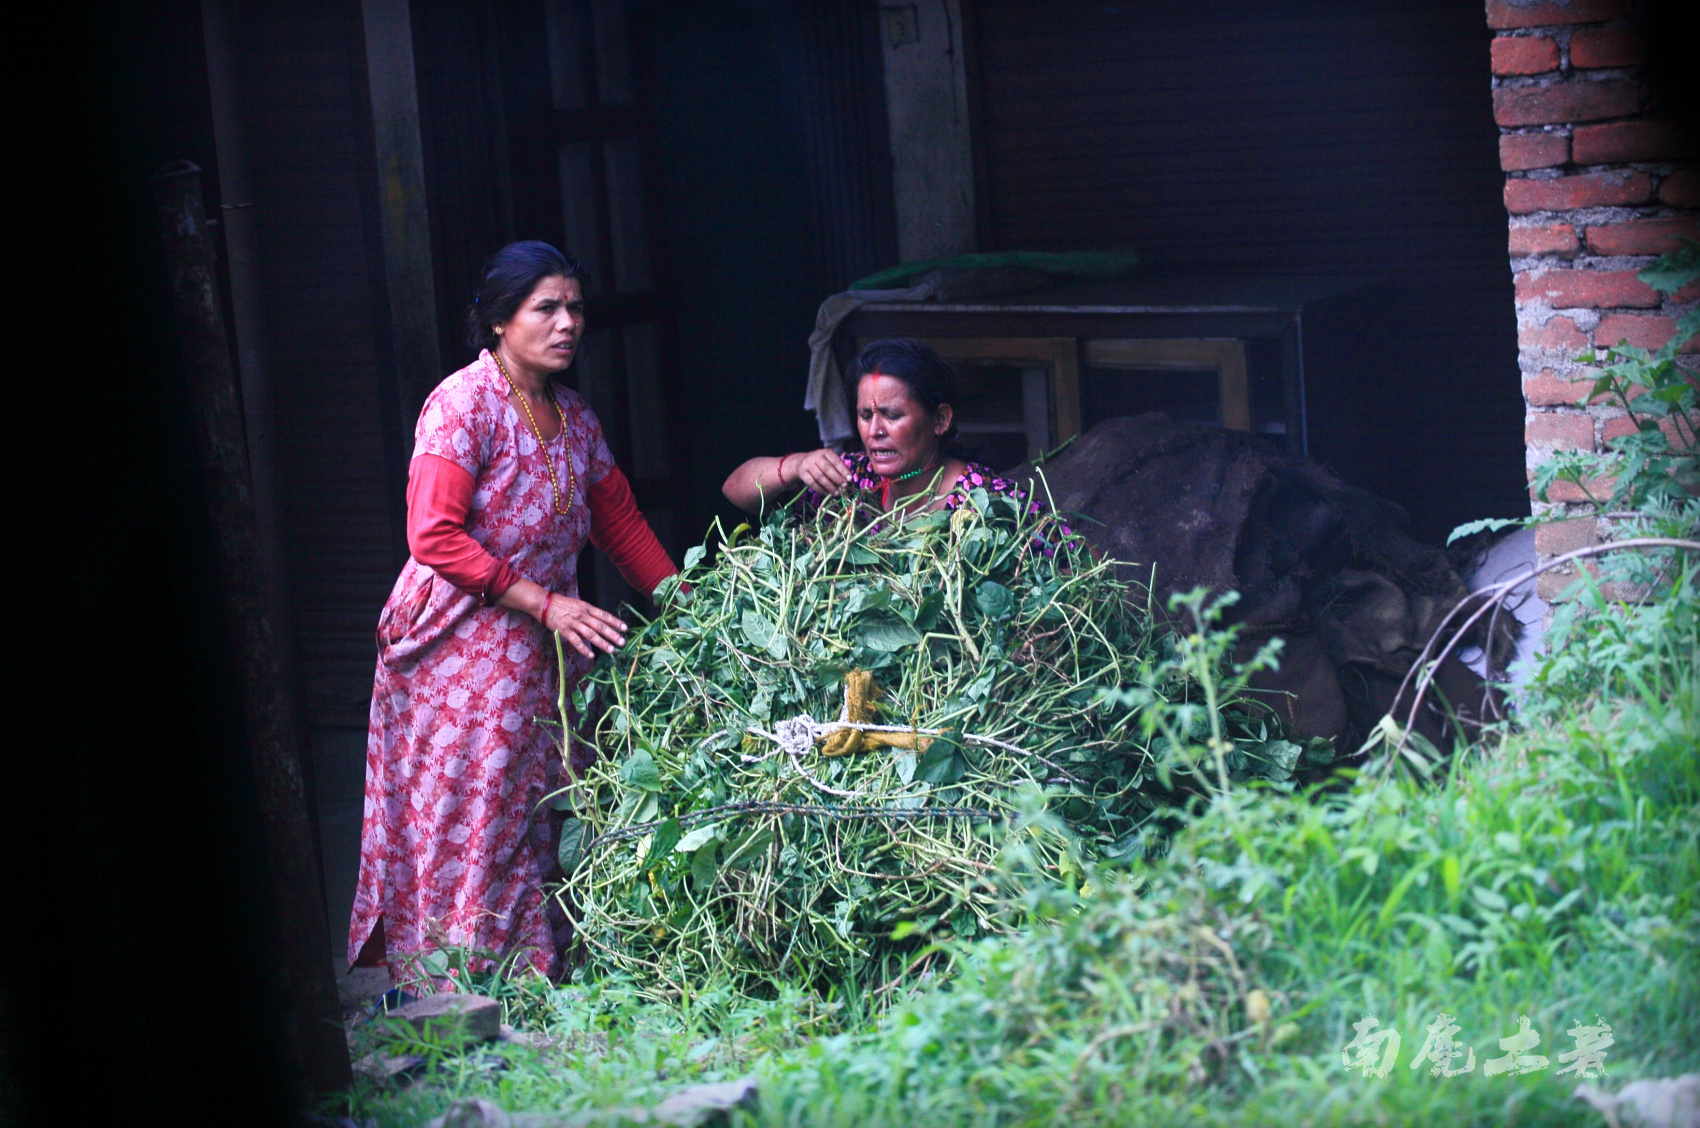 尼泊尔妇女生活艰辛,却不忘美丽